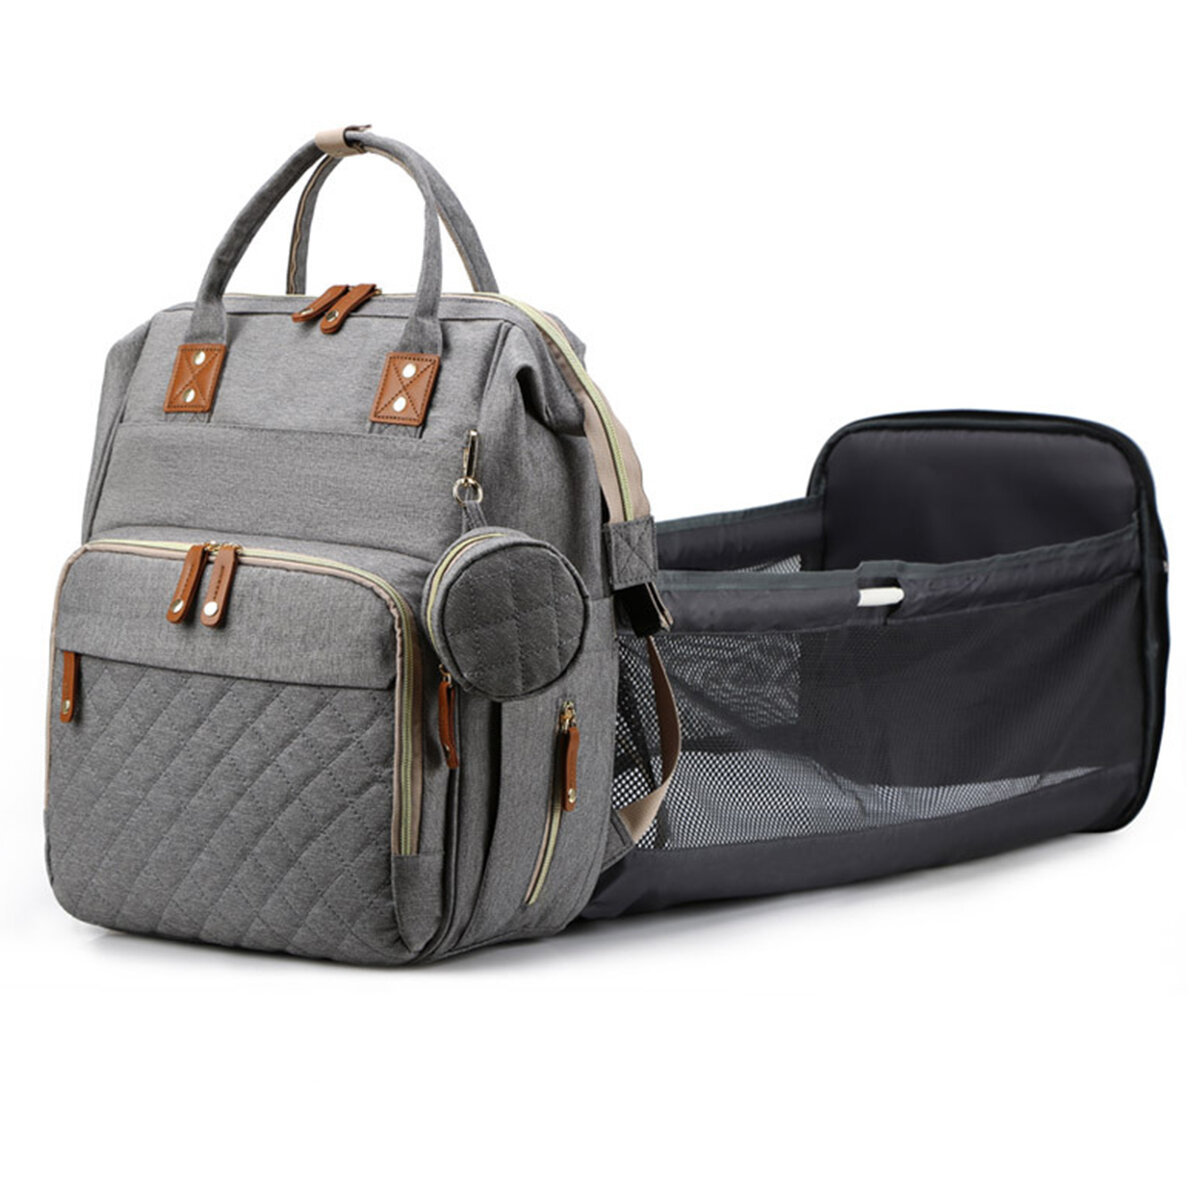 Mama-Rucksack mit USB-Port, klappbarem Bett, Wickeltasche, multifunktional für Outdoor-Reisen